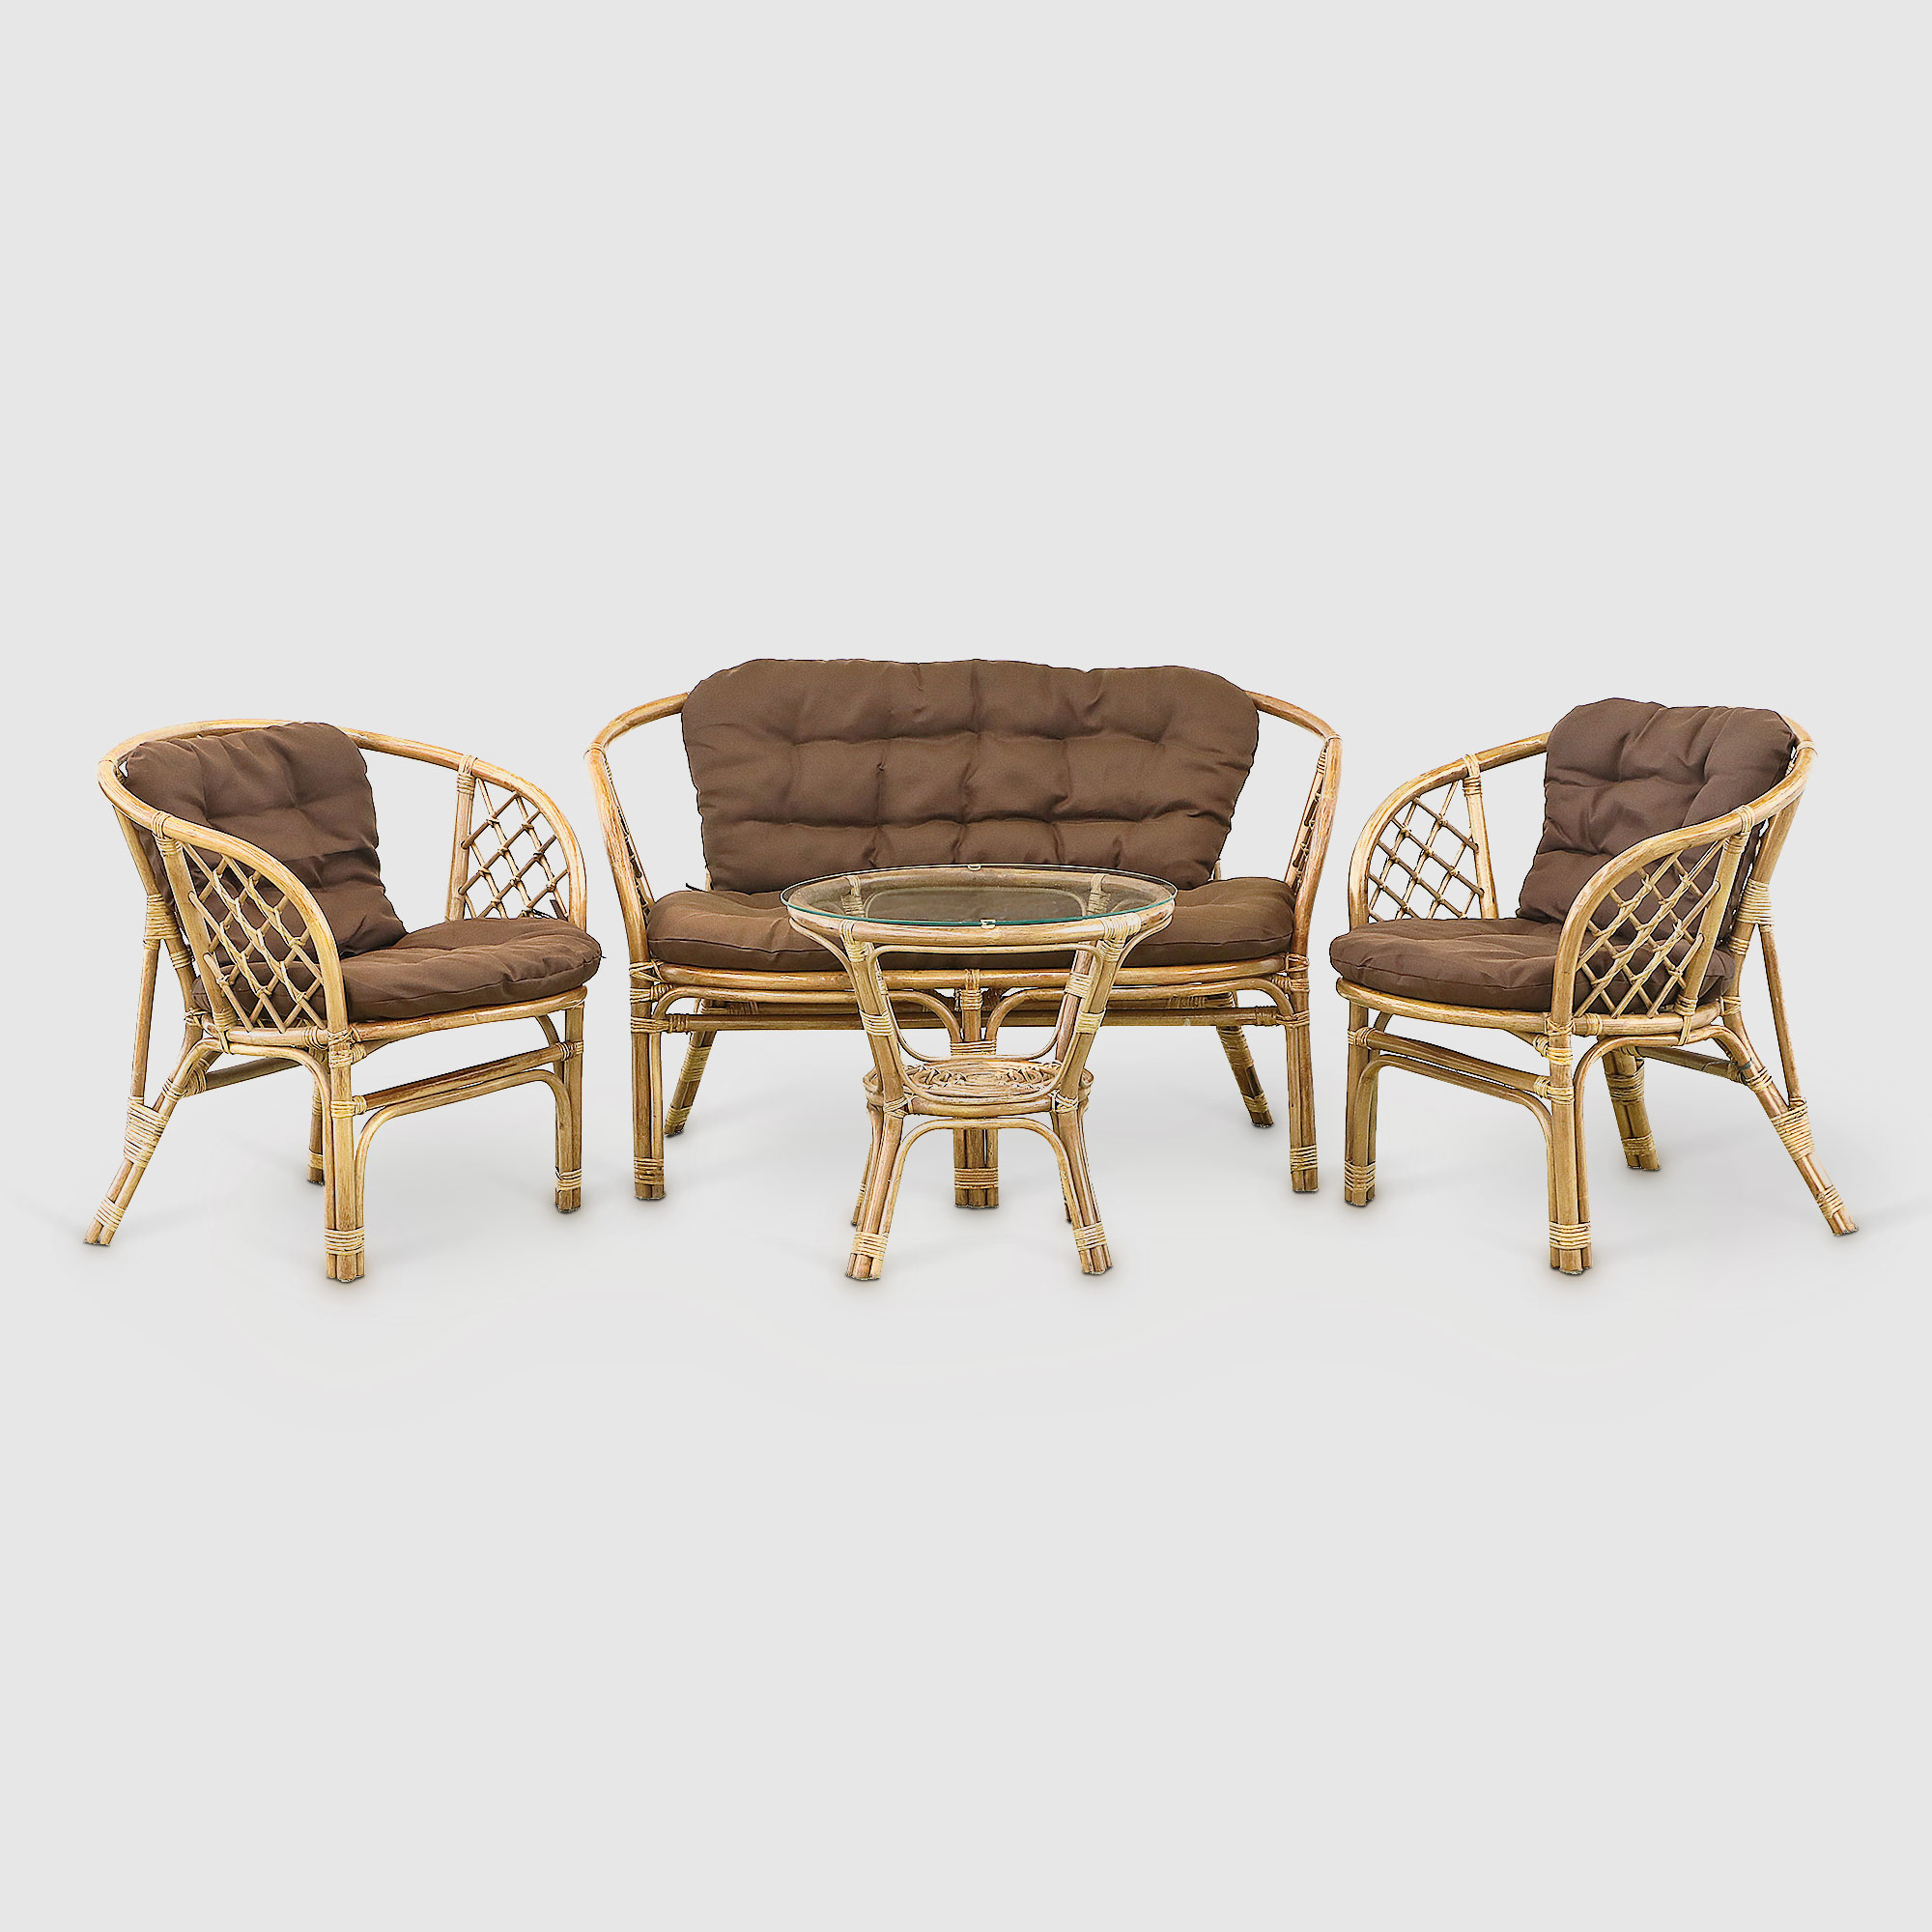 Комплект мебели Rattan grand toscana hon: диван, стол, 2 кресла, цвет светло-коричневый - фото 1